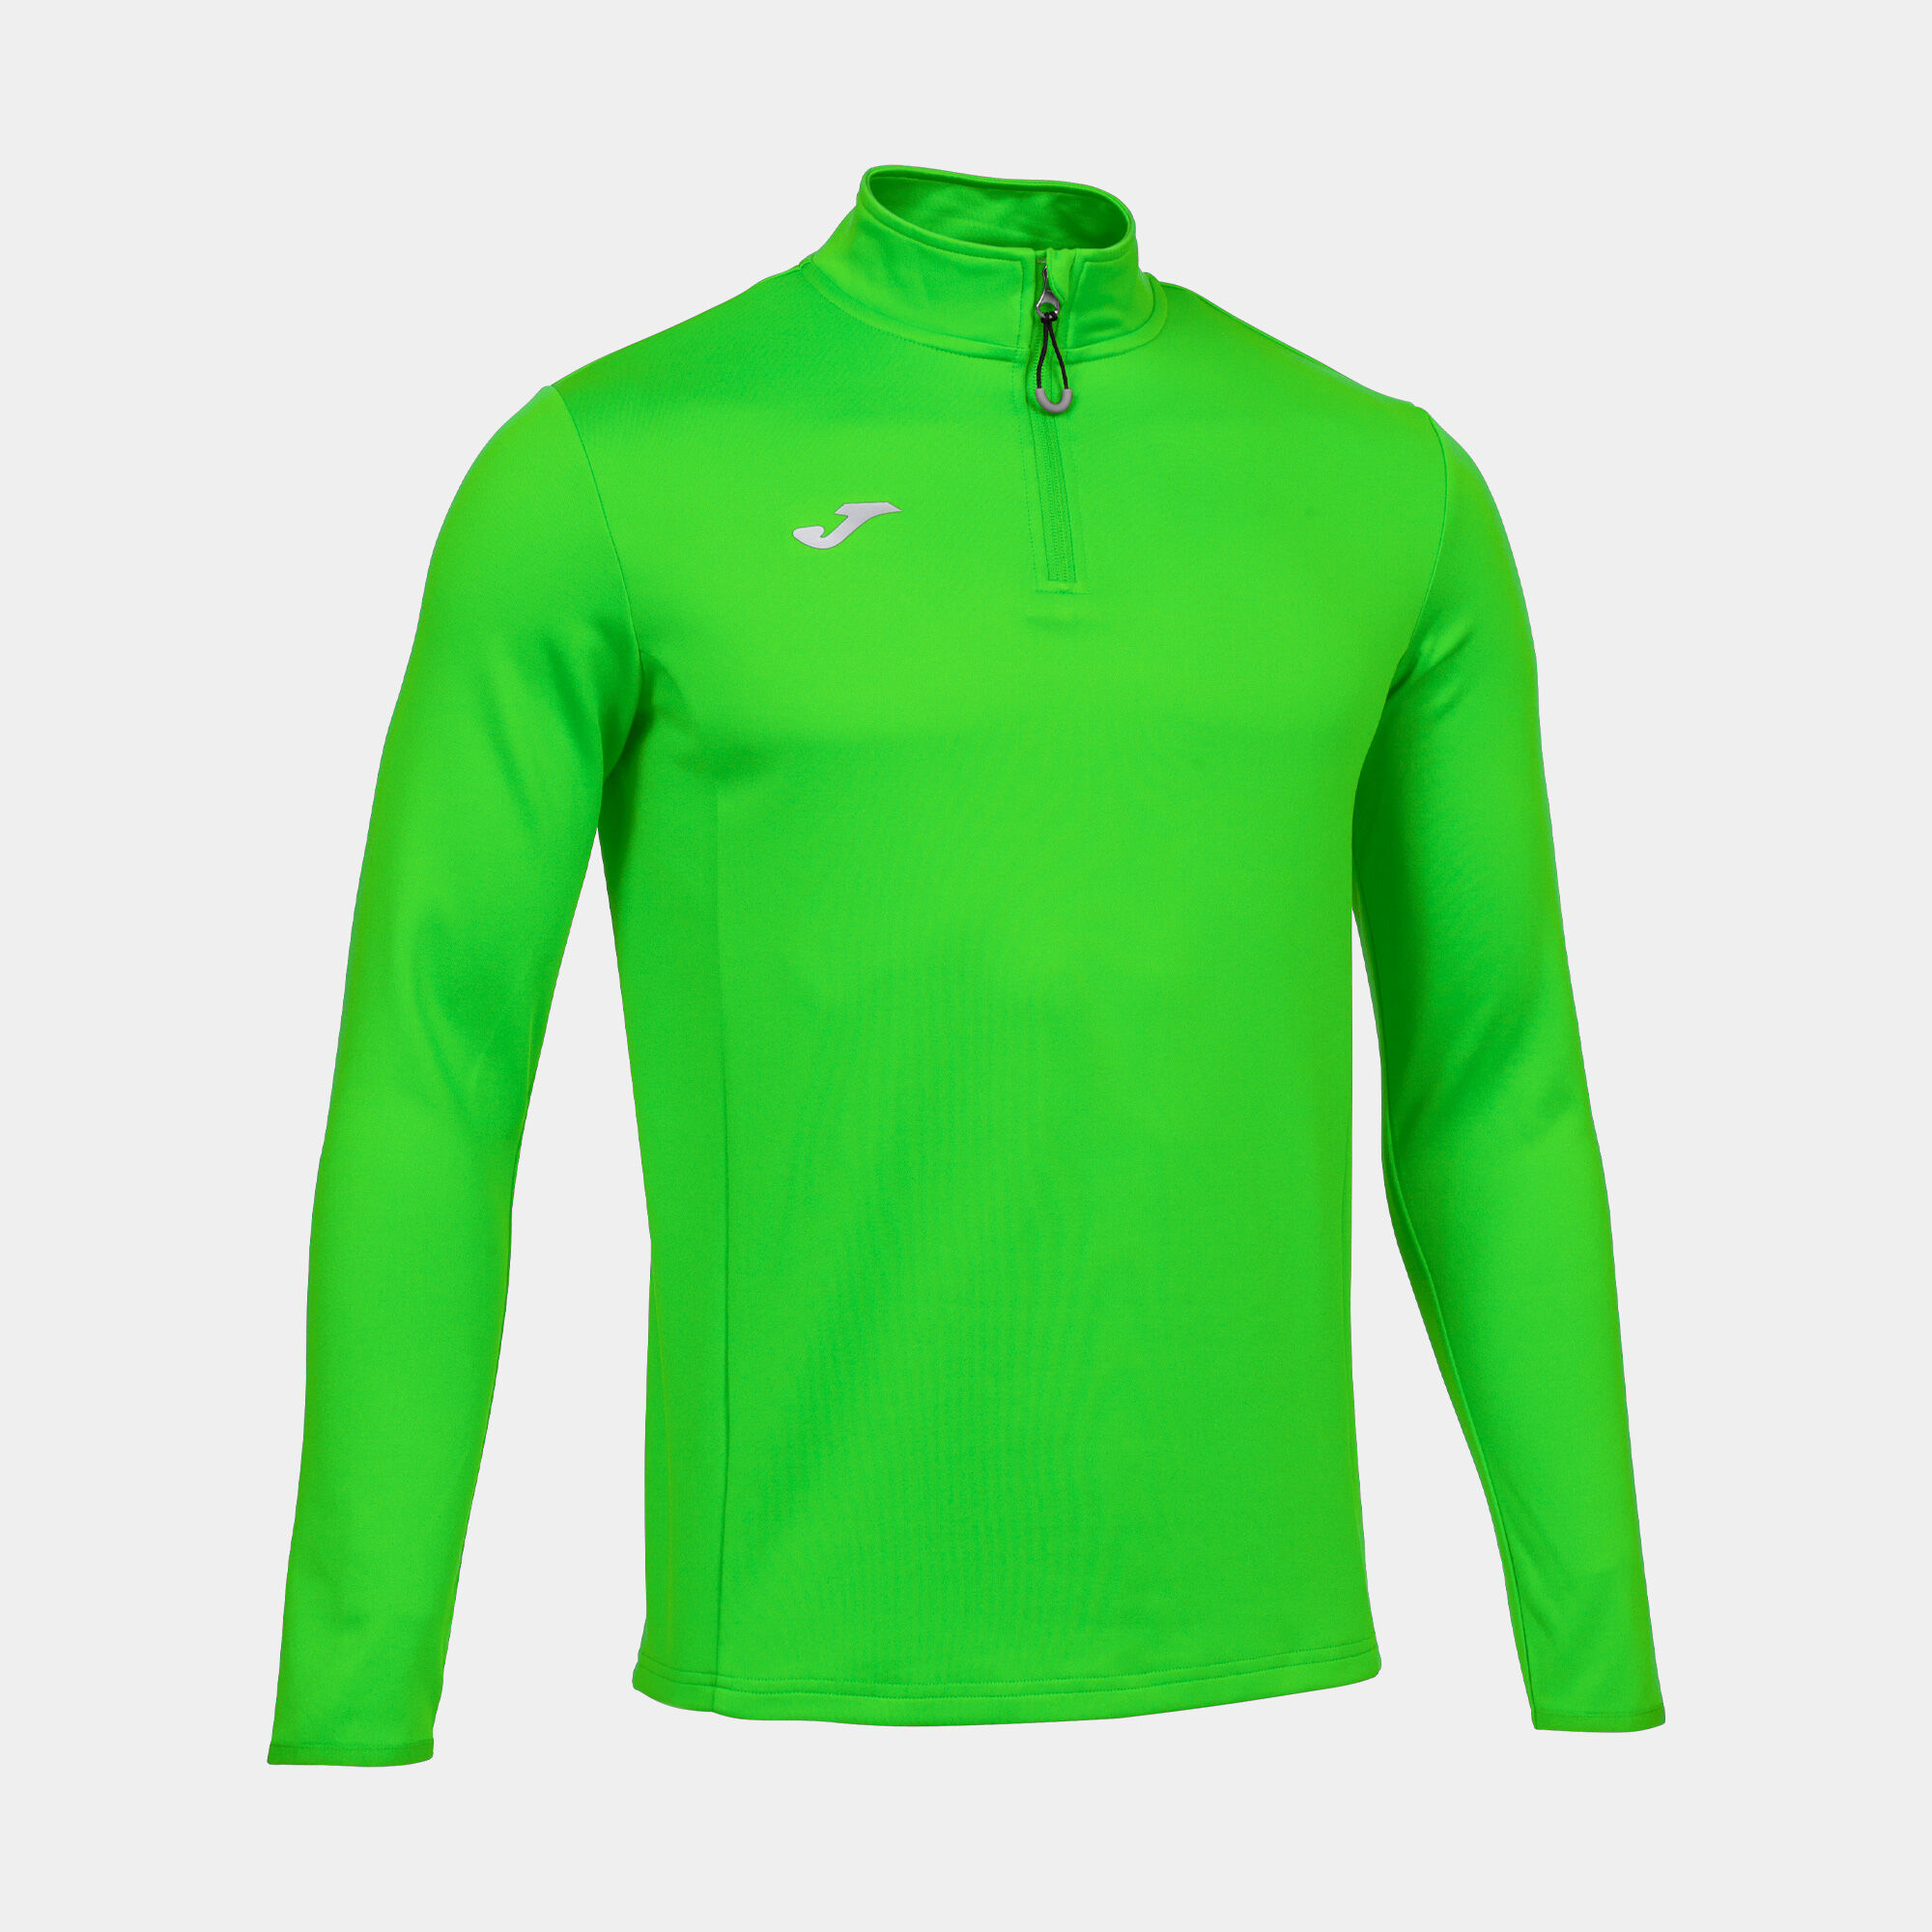 Bluza mężczyźni Running Night fluorescencyjny zielony